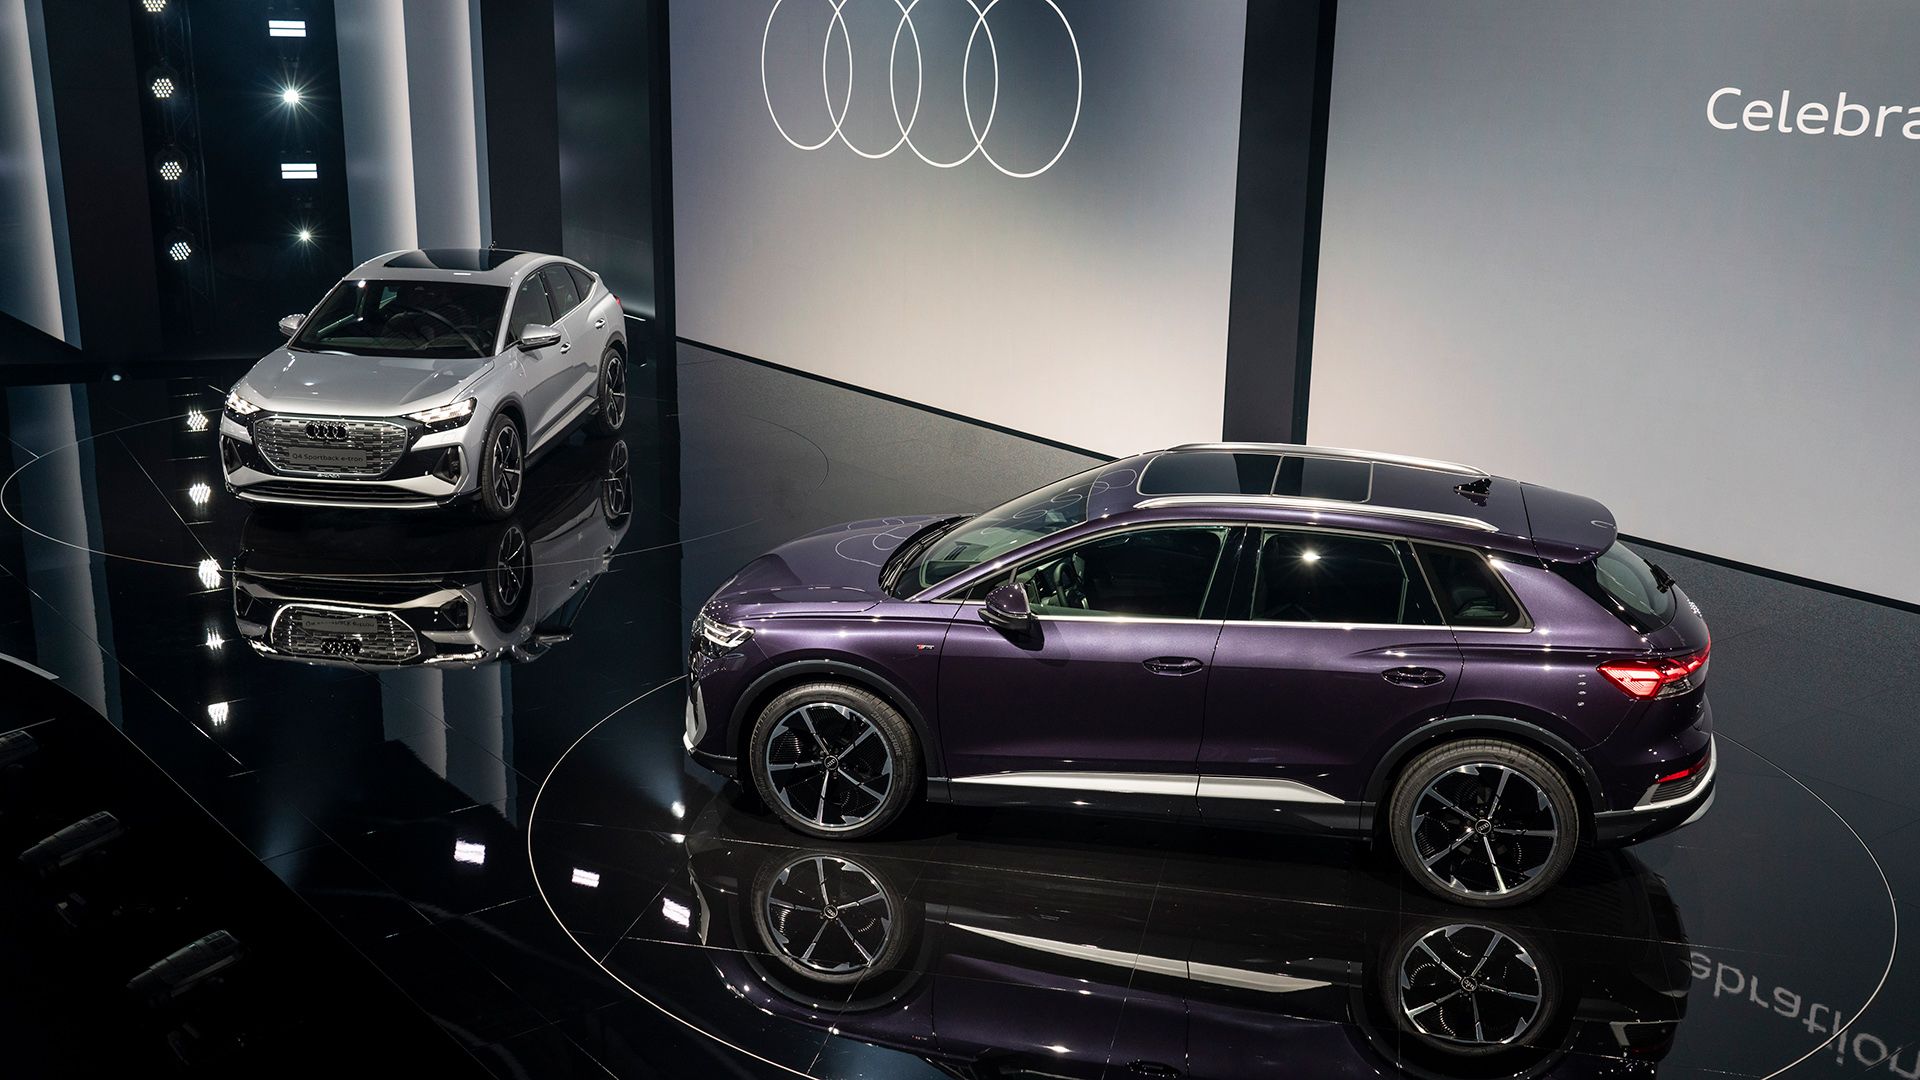 在画面中，您可以看到舞台上展示着两款奥迪 Q4-tron 车型——银色和紫色。